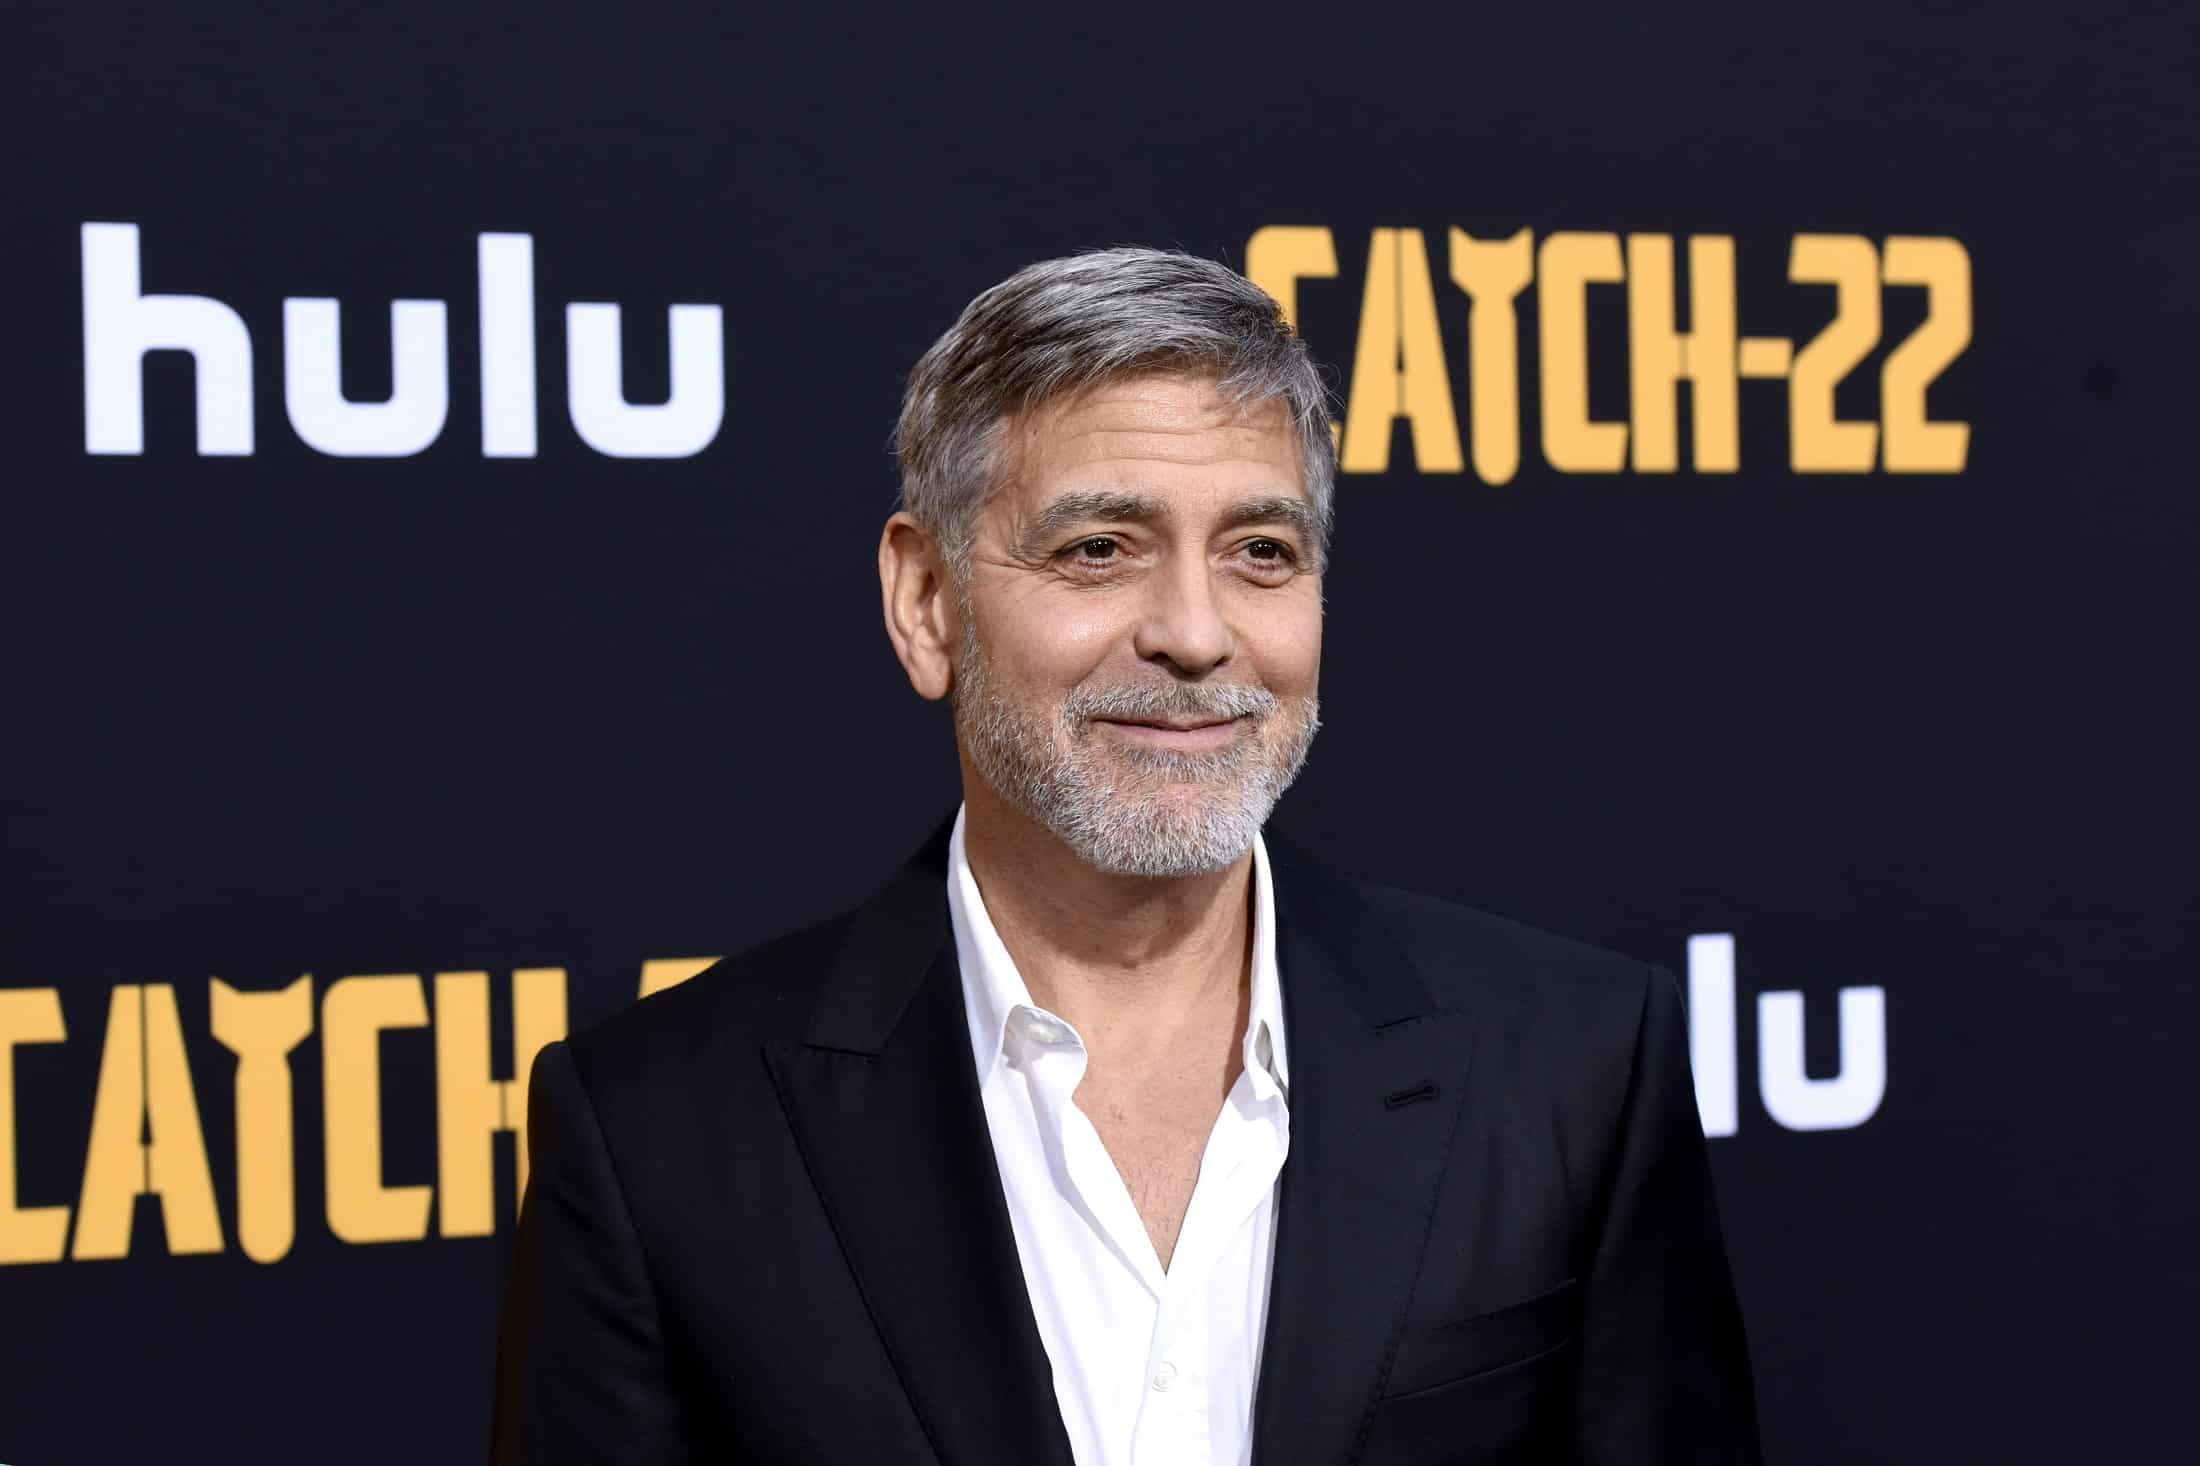 Lekcja stylu: czego nauczyliśmy się od George’a Clooneya?